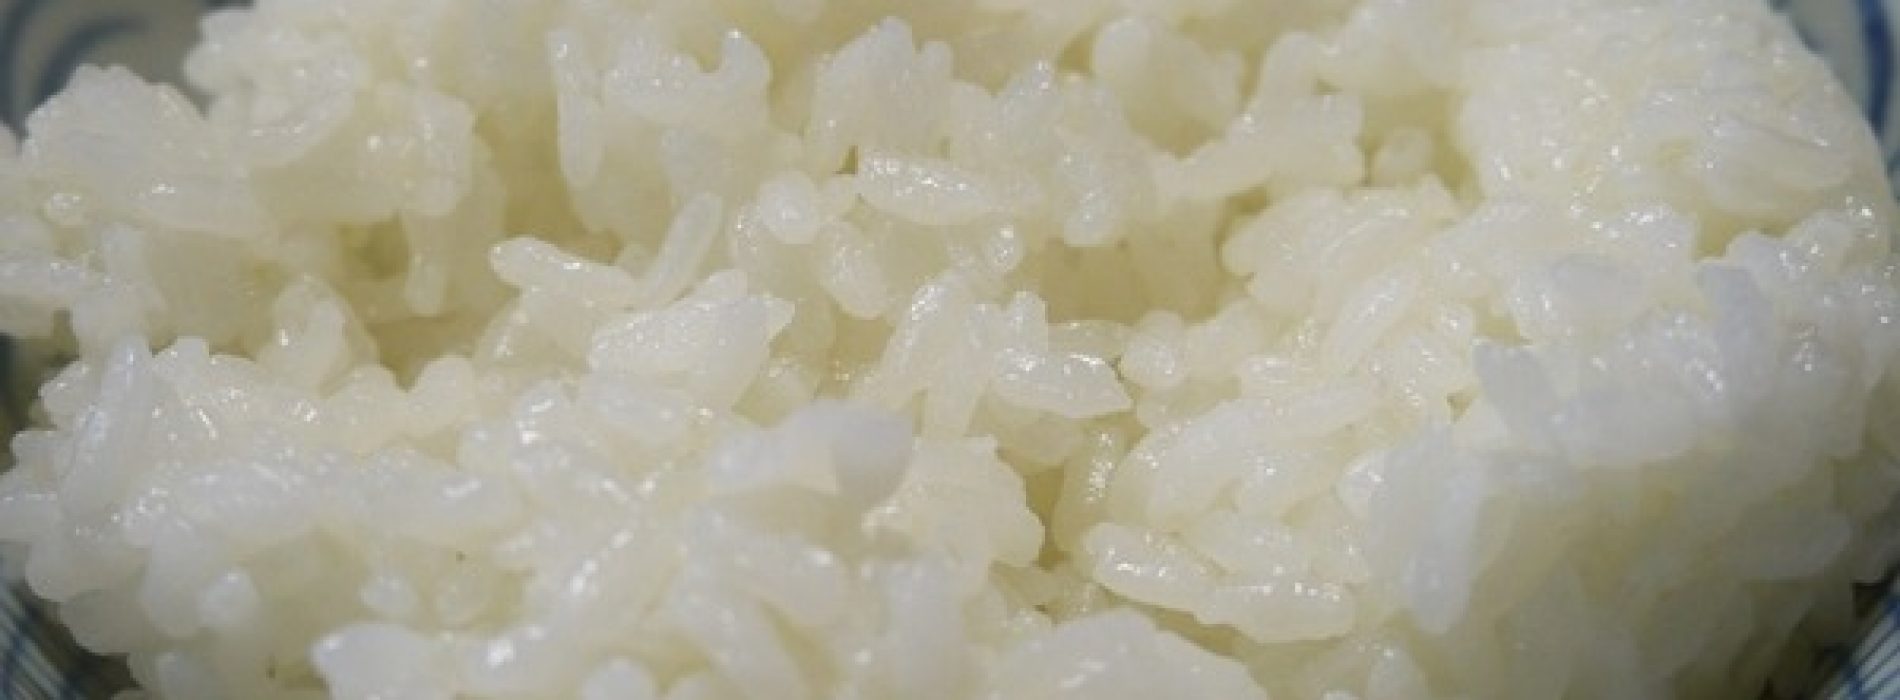 Onderzoek toont aan dat we rijst helemaal verkeerd koken